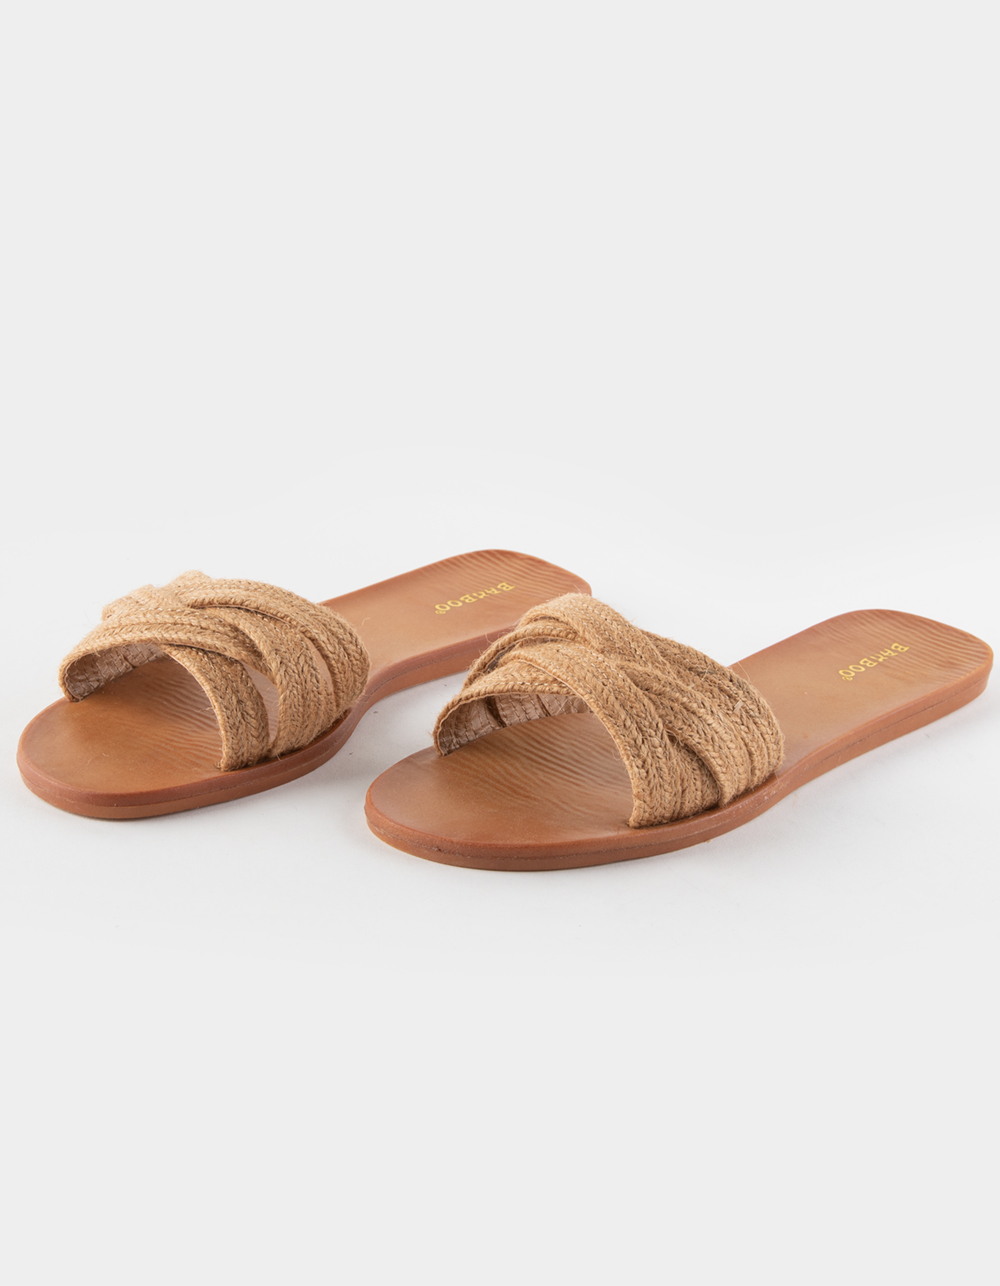 BAMBOO Moonbeam Womens Slide Sandals - TAN | Tillys